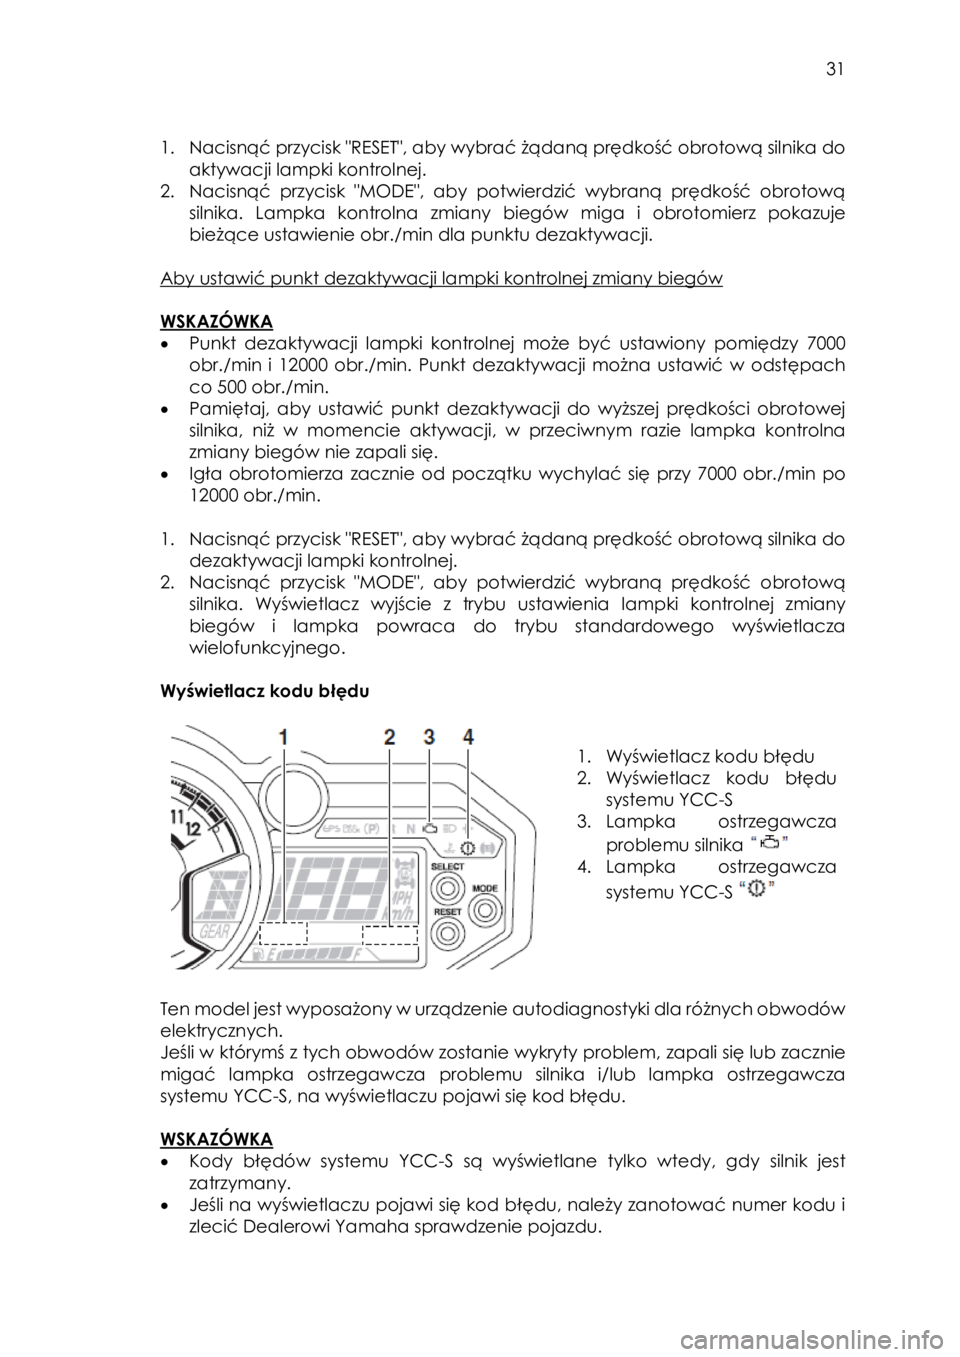 YAMAHA YXZ1000R SS 2018  Instrukcja obsługi (in Polish)  31 
 
1. Nacisnąć przycisk "RESET", aby wybrać żądaną prędkość obrotową silnika do 
aktywacji lampki kontrolnej.  
2. Nacisnąć  przycisk  "MODE",  aby  potwierdzić  wybra